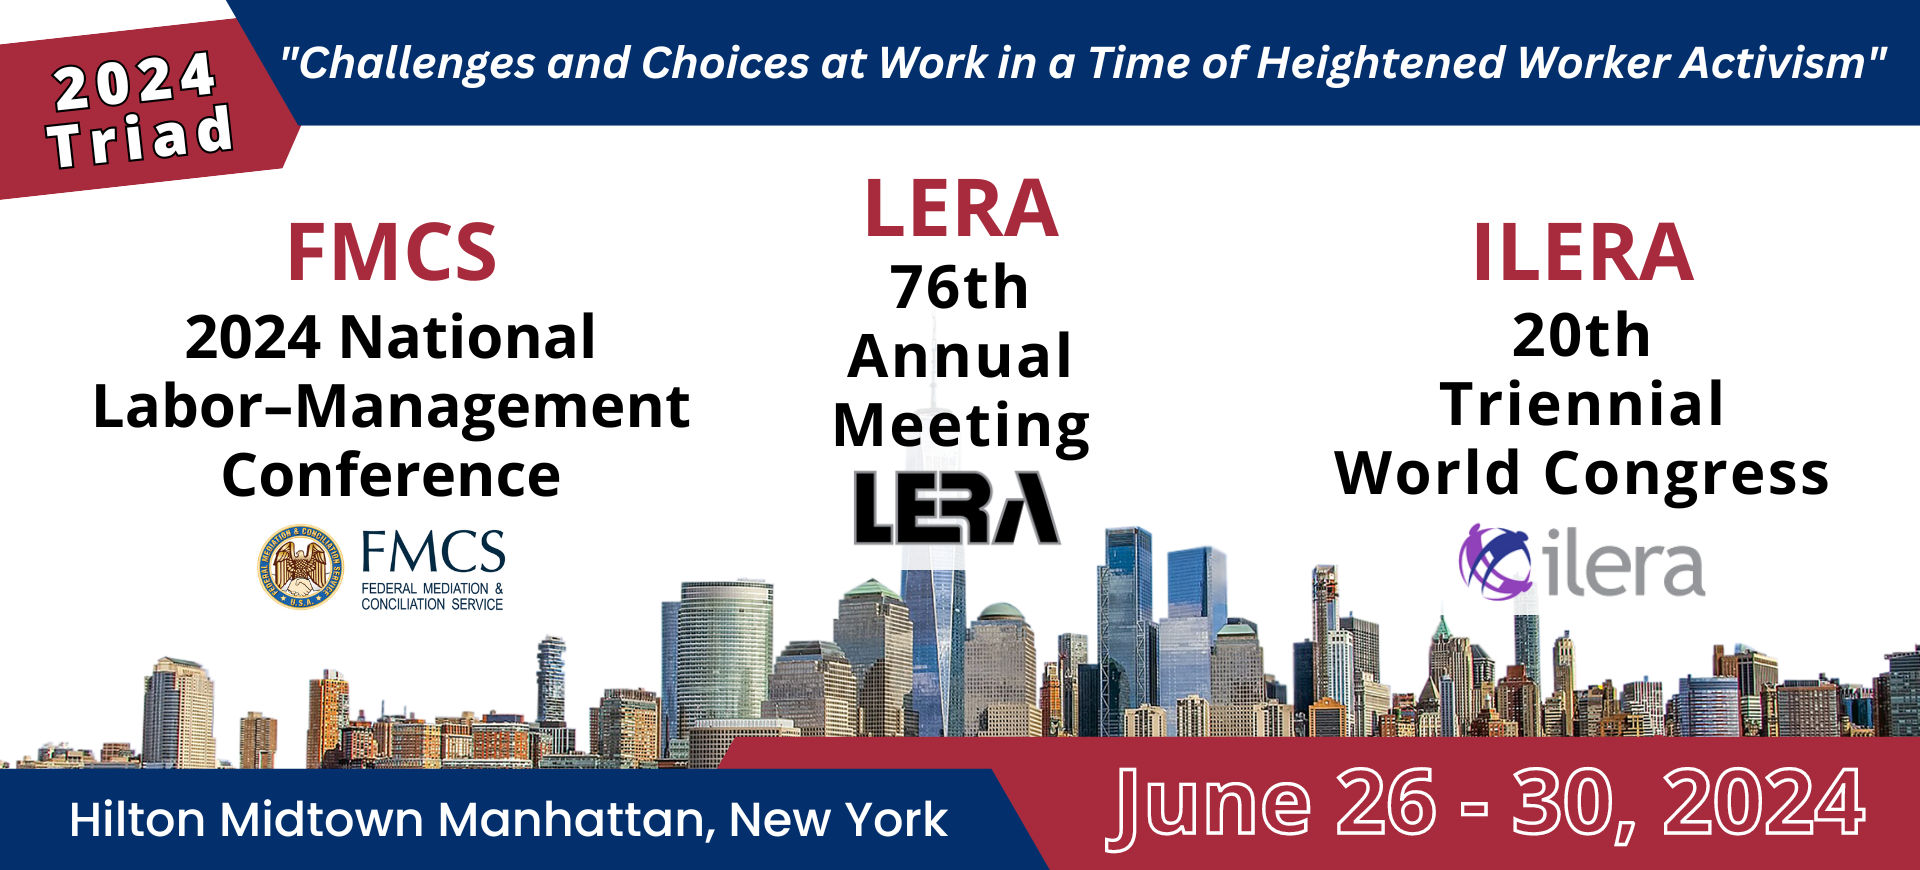 Tím CELSI je súčasťou 20. svetovej konferencie ILERA2024 v New Yorku